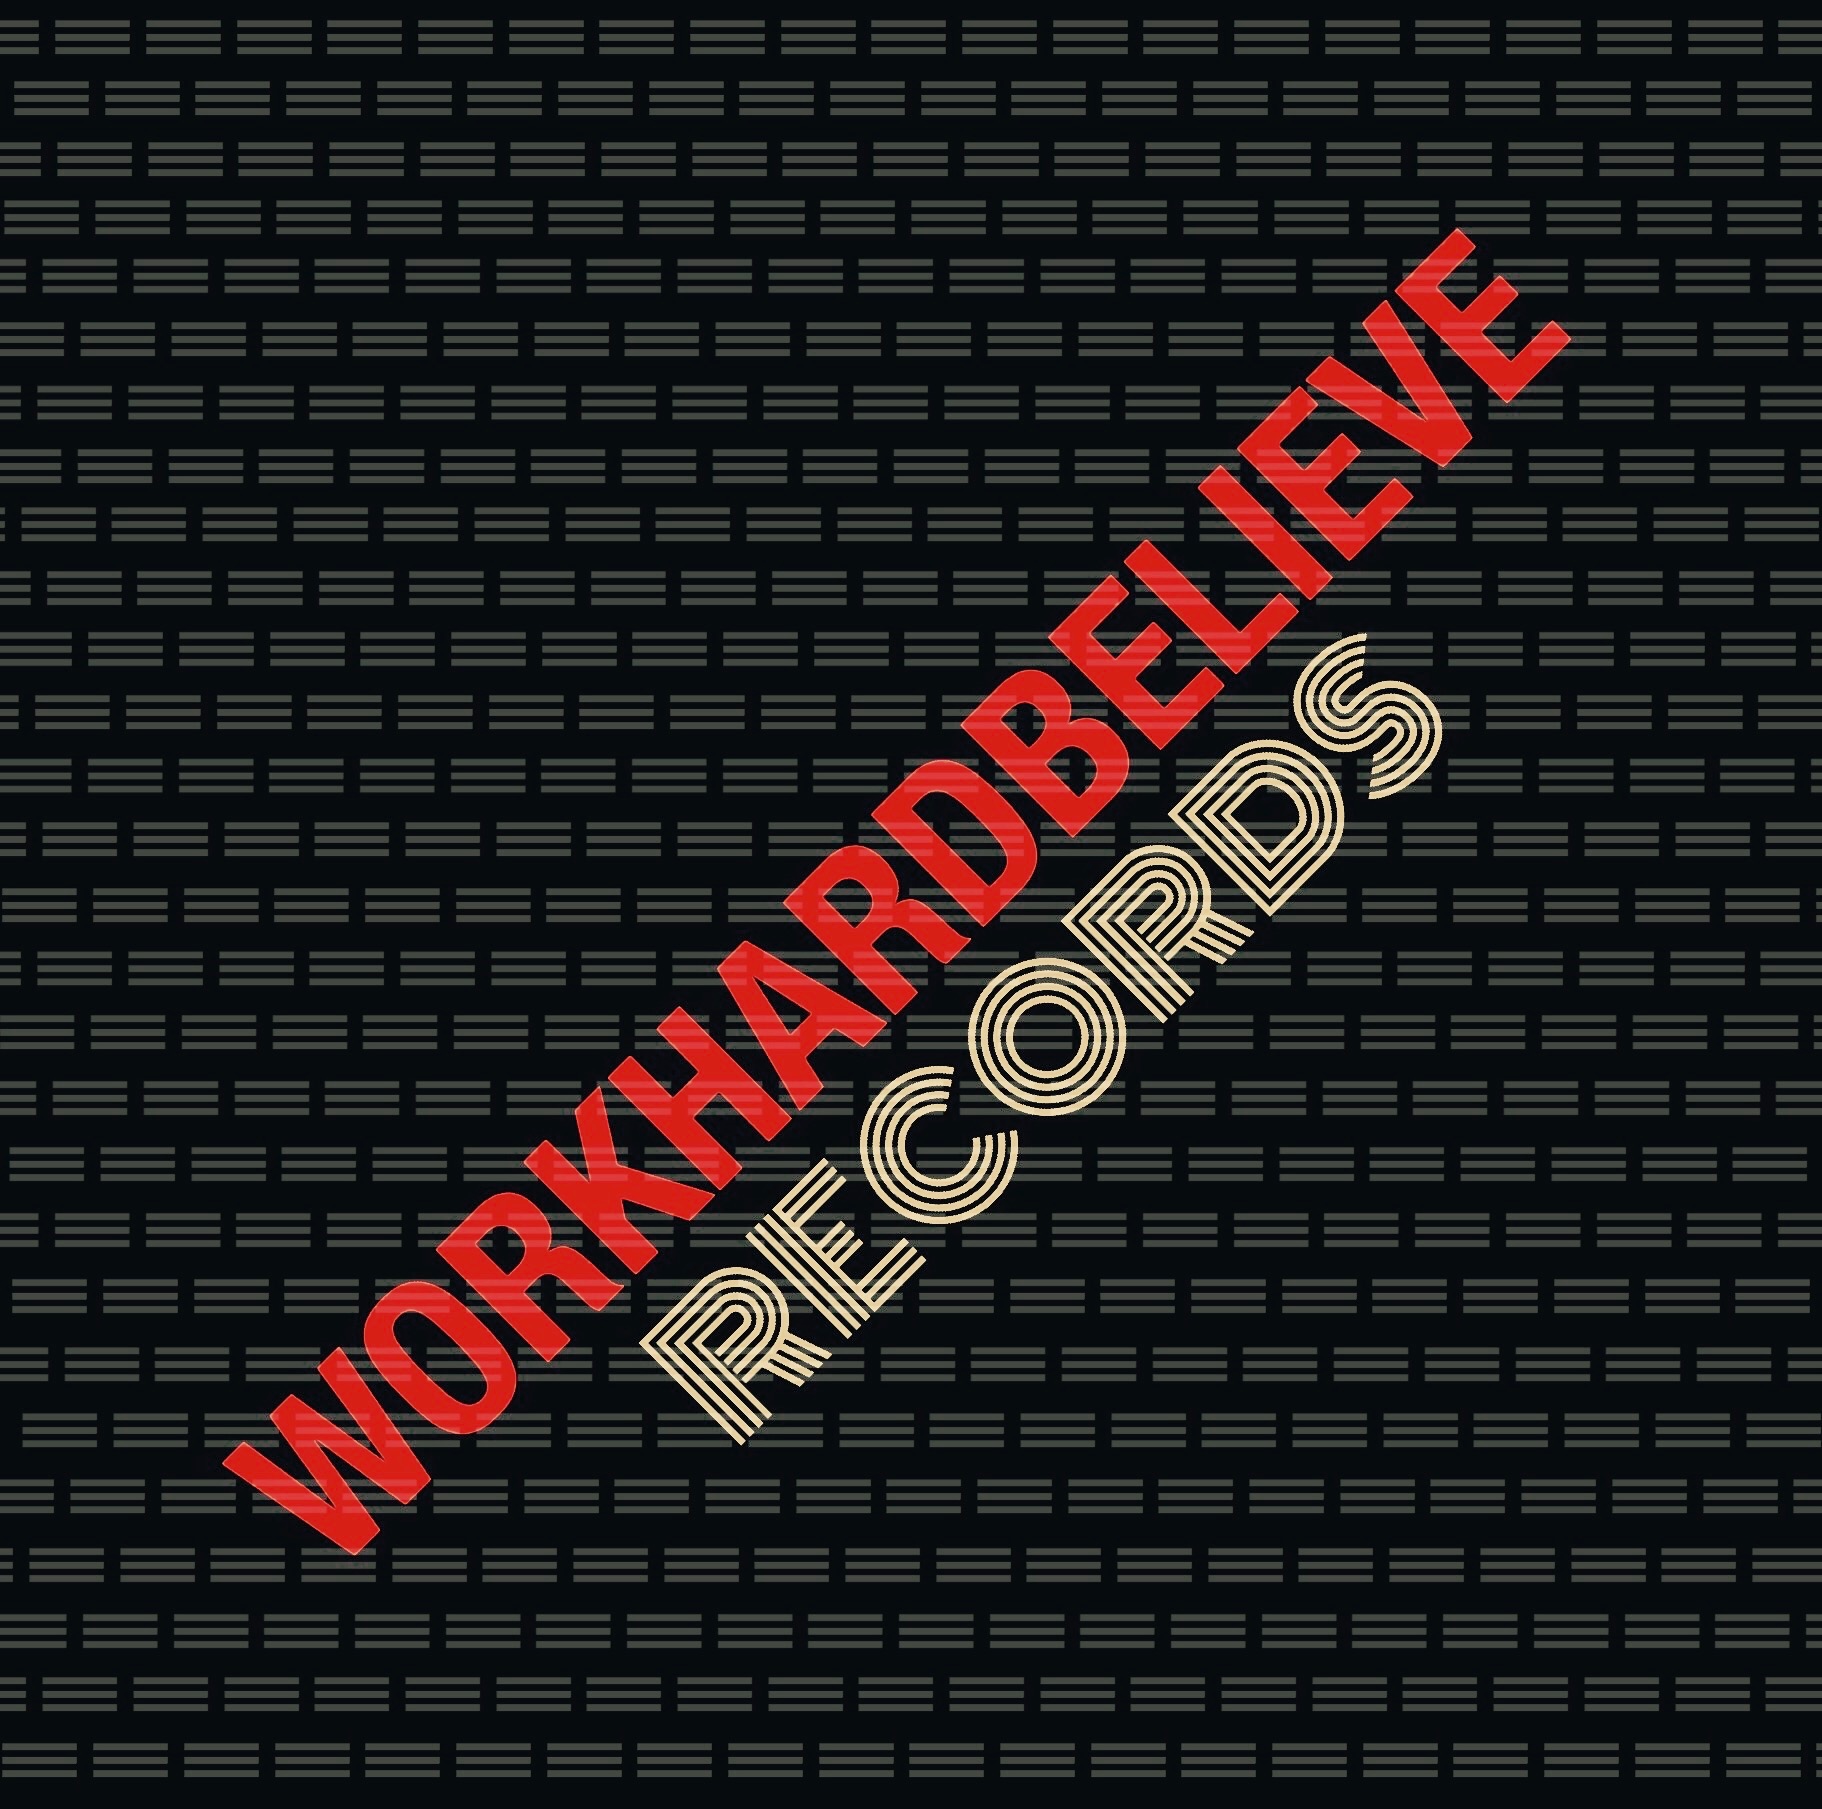 workhardbelieve records logo.jpeg